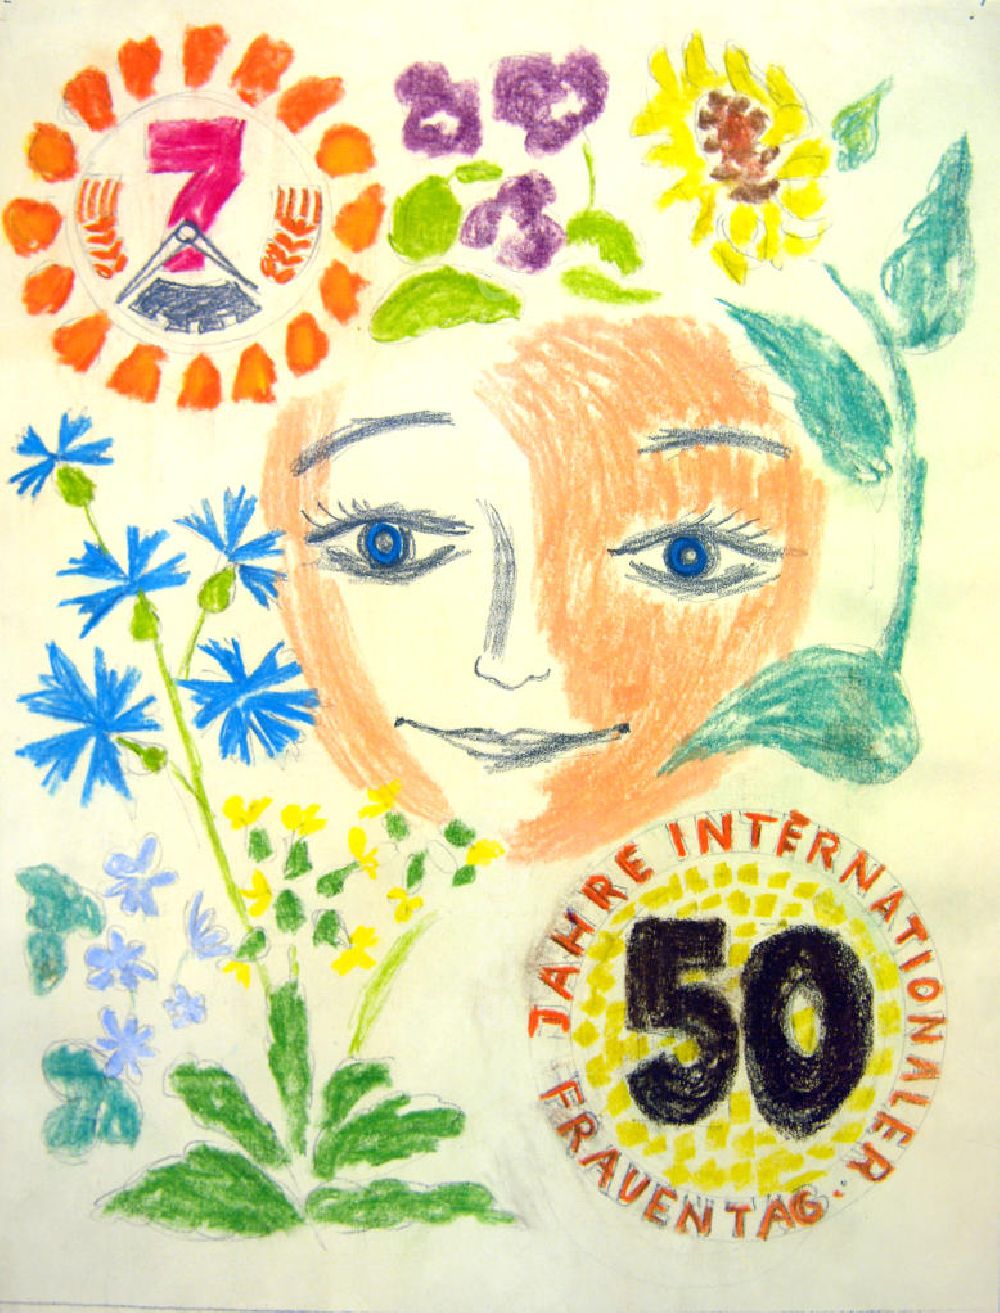 GDR photo archive: Berlin - Skizze von Herbert Sandberg Skizze 2 für DFD aus dem Jahr 1959, 30,6x39,5cm Bleistift und Kreide, handsigniert auf der Rückseite. Mittig: ein Gesicht mit blauen Augen; ringsherum: Blumen, z.B. Sonnenblume; links oben: eine Uhr mit einer 7 im Ährenkranz; rechts unten: Kreis (5